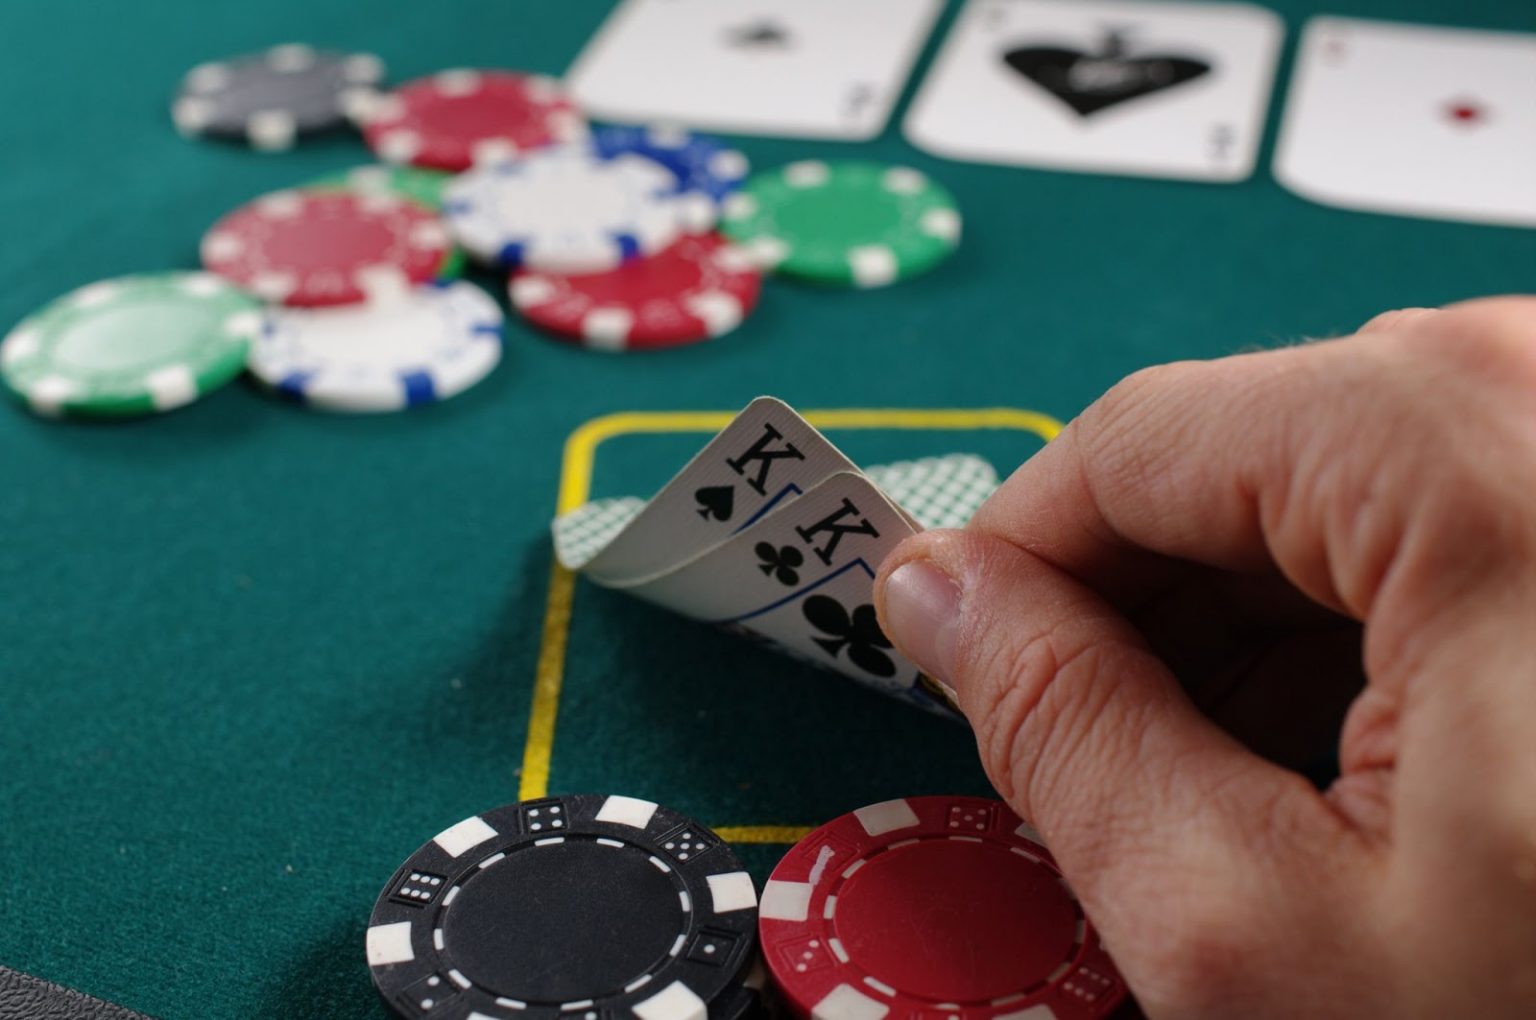 rounders casino poker scene song